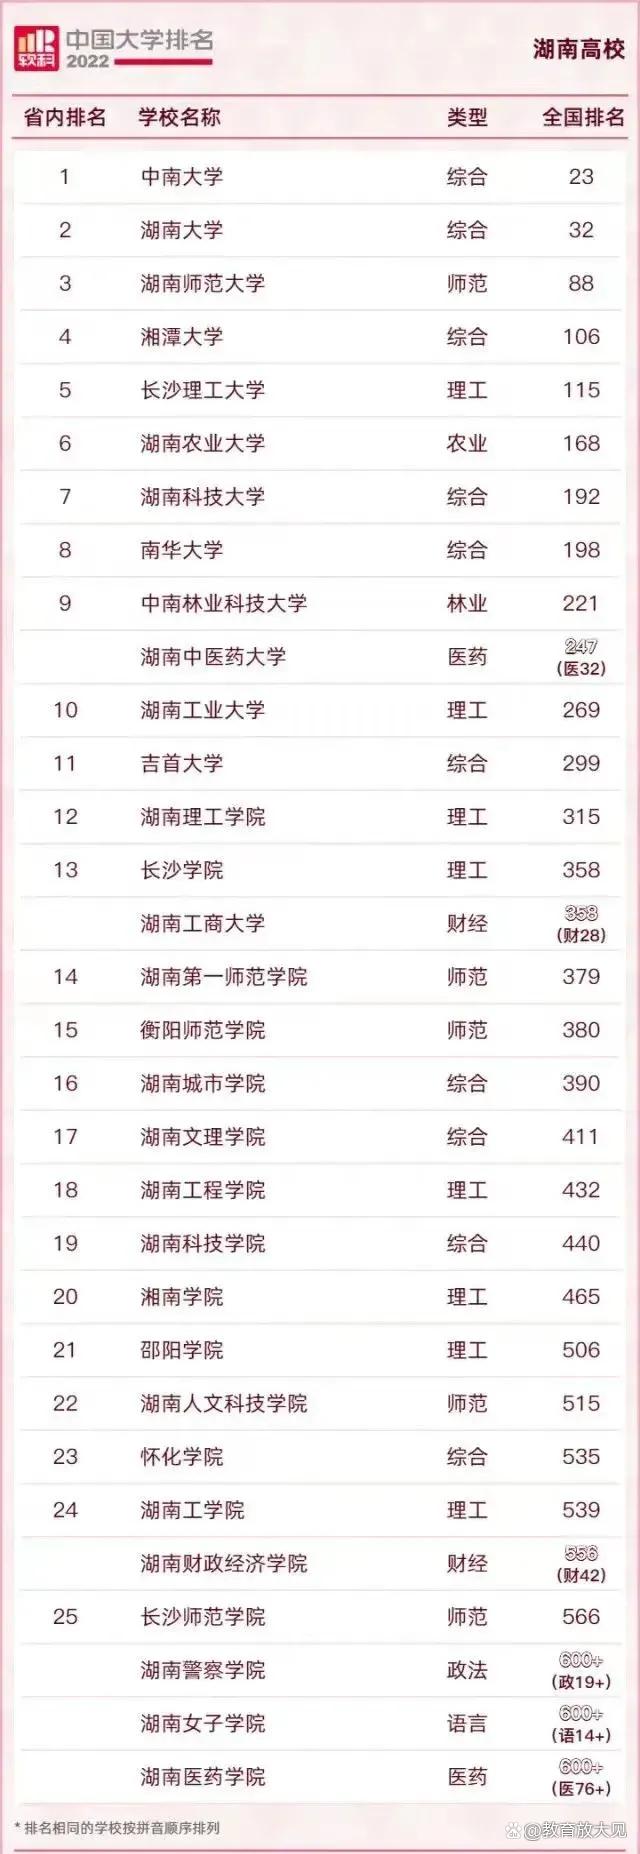 2022湖南高校排名，湖南大学第二，湖南师大、湘潭大学排名下滑